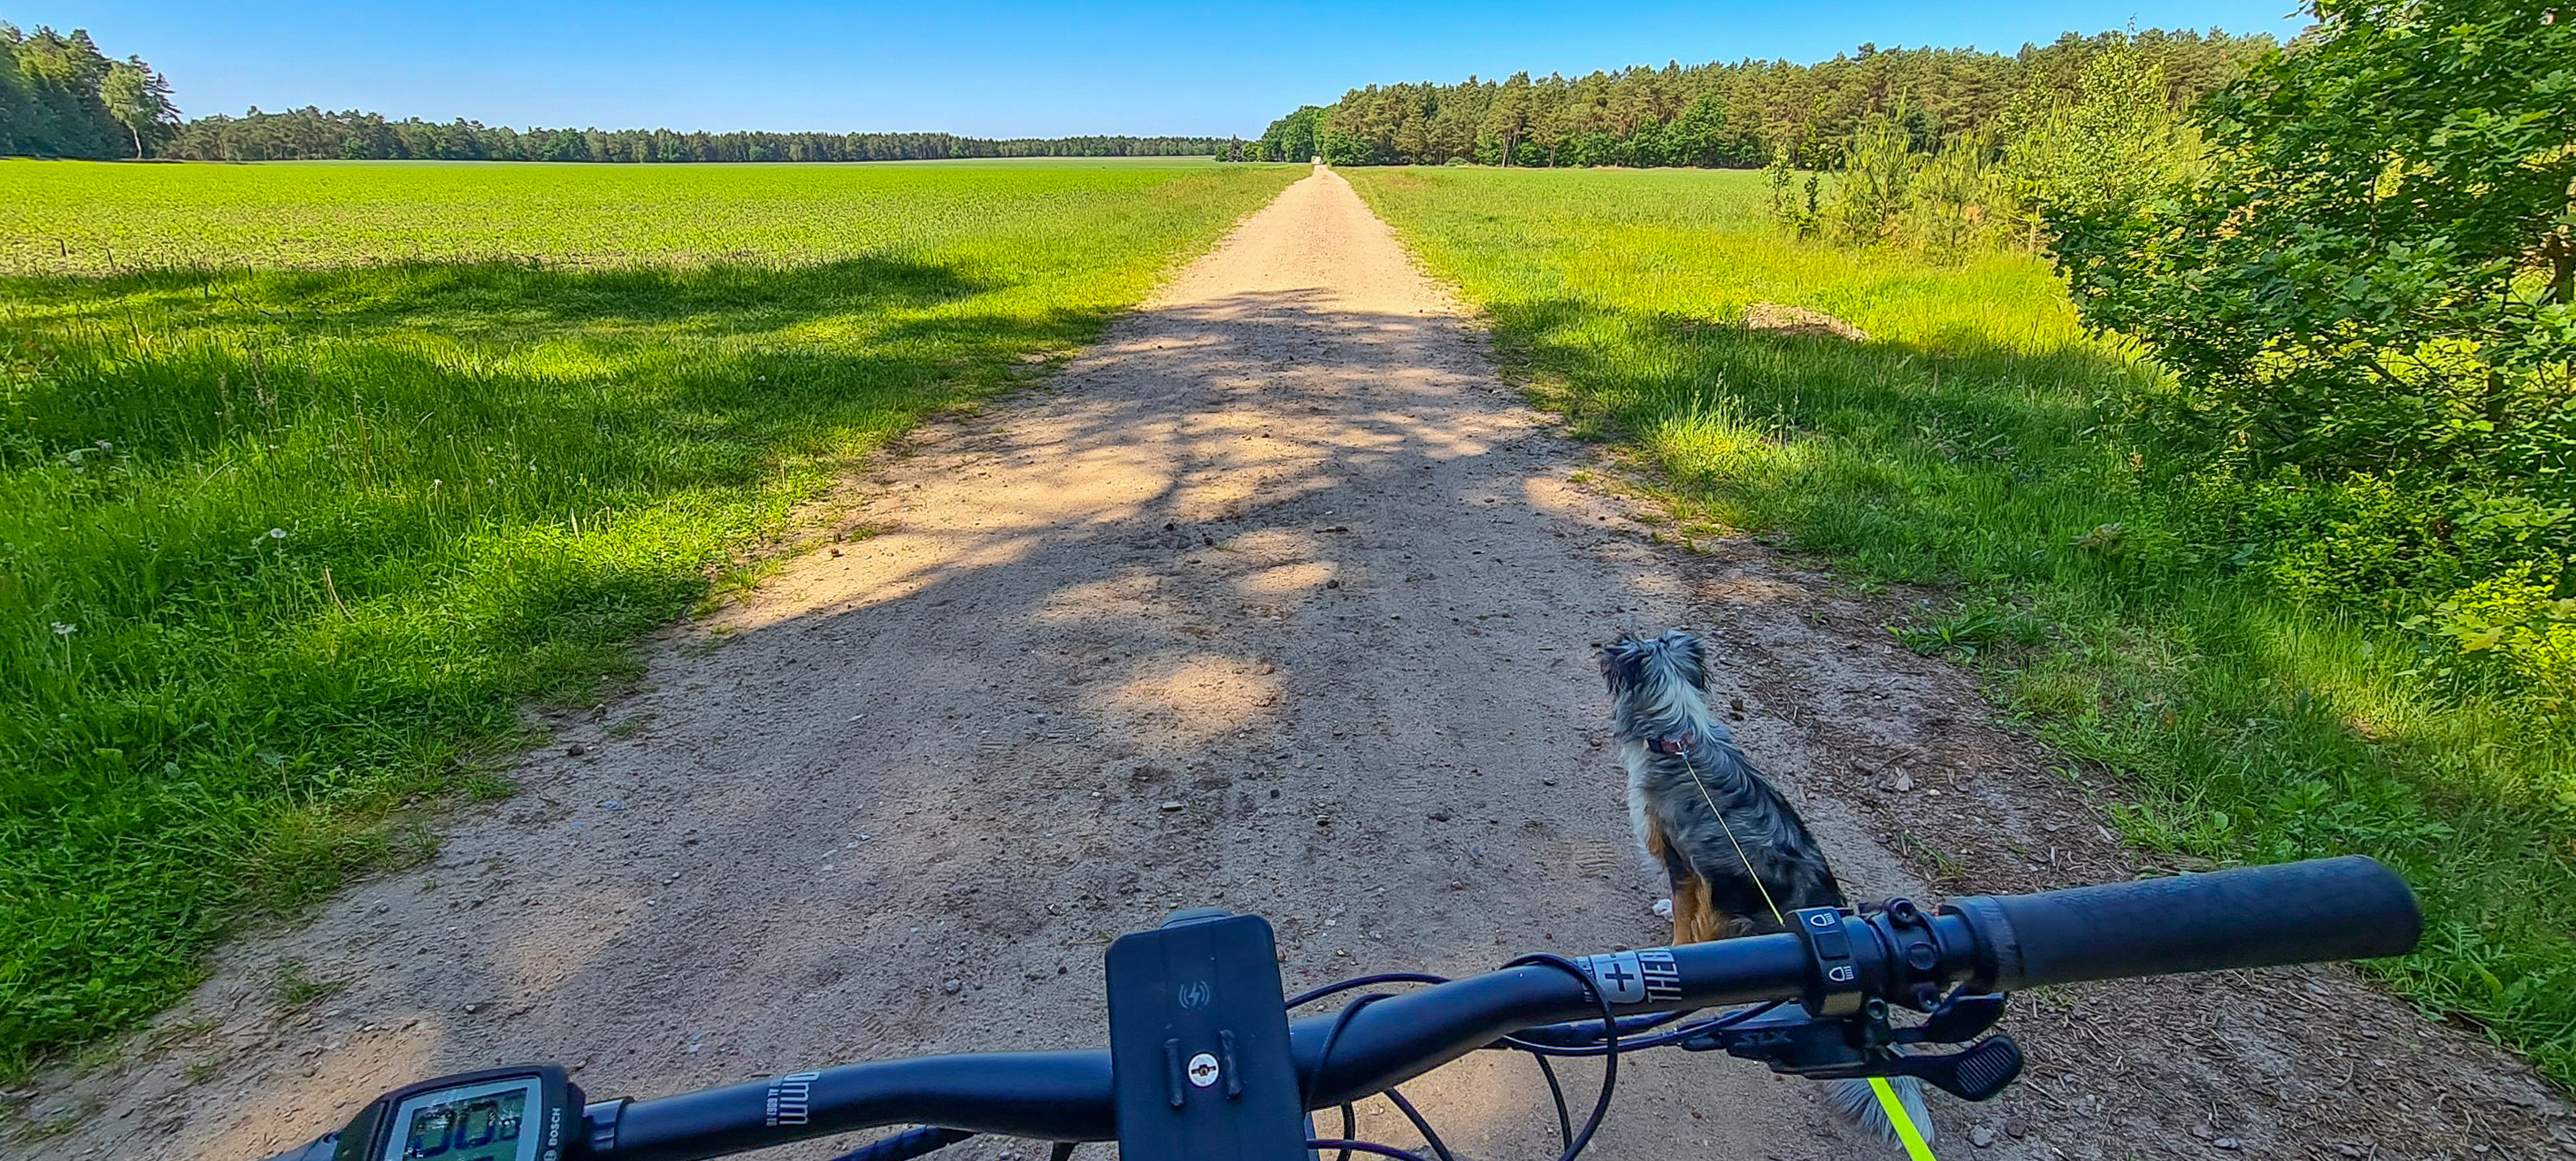 Radtour in der Lüneburger Heide bei Soltau